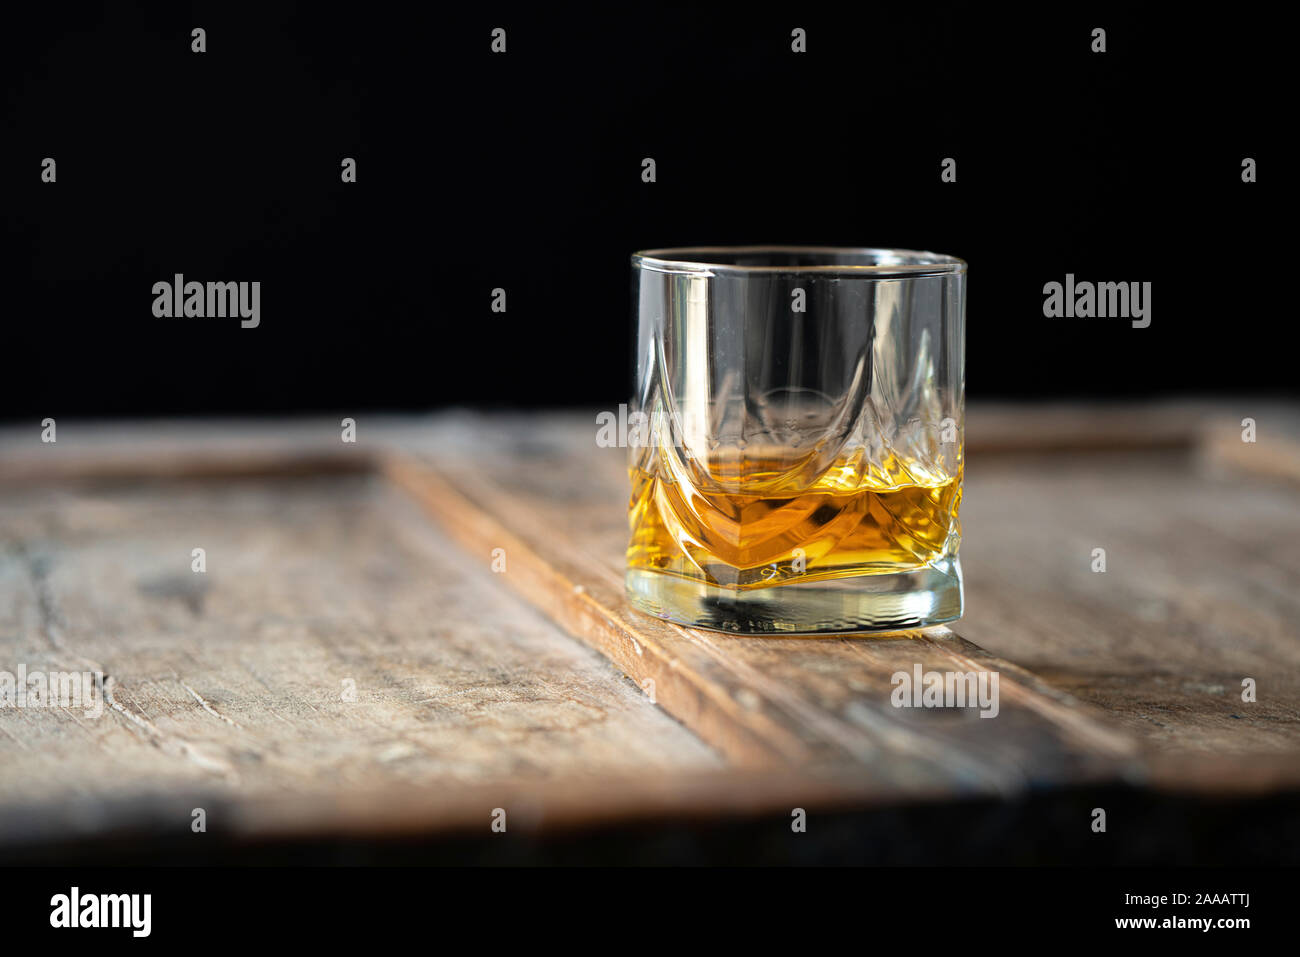 Primer plano de un vaso de whisky en una vieja mesa de madera mal utilizado, fondo oscuro Foto de stock